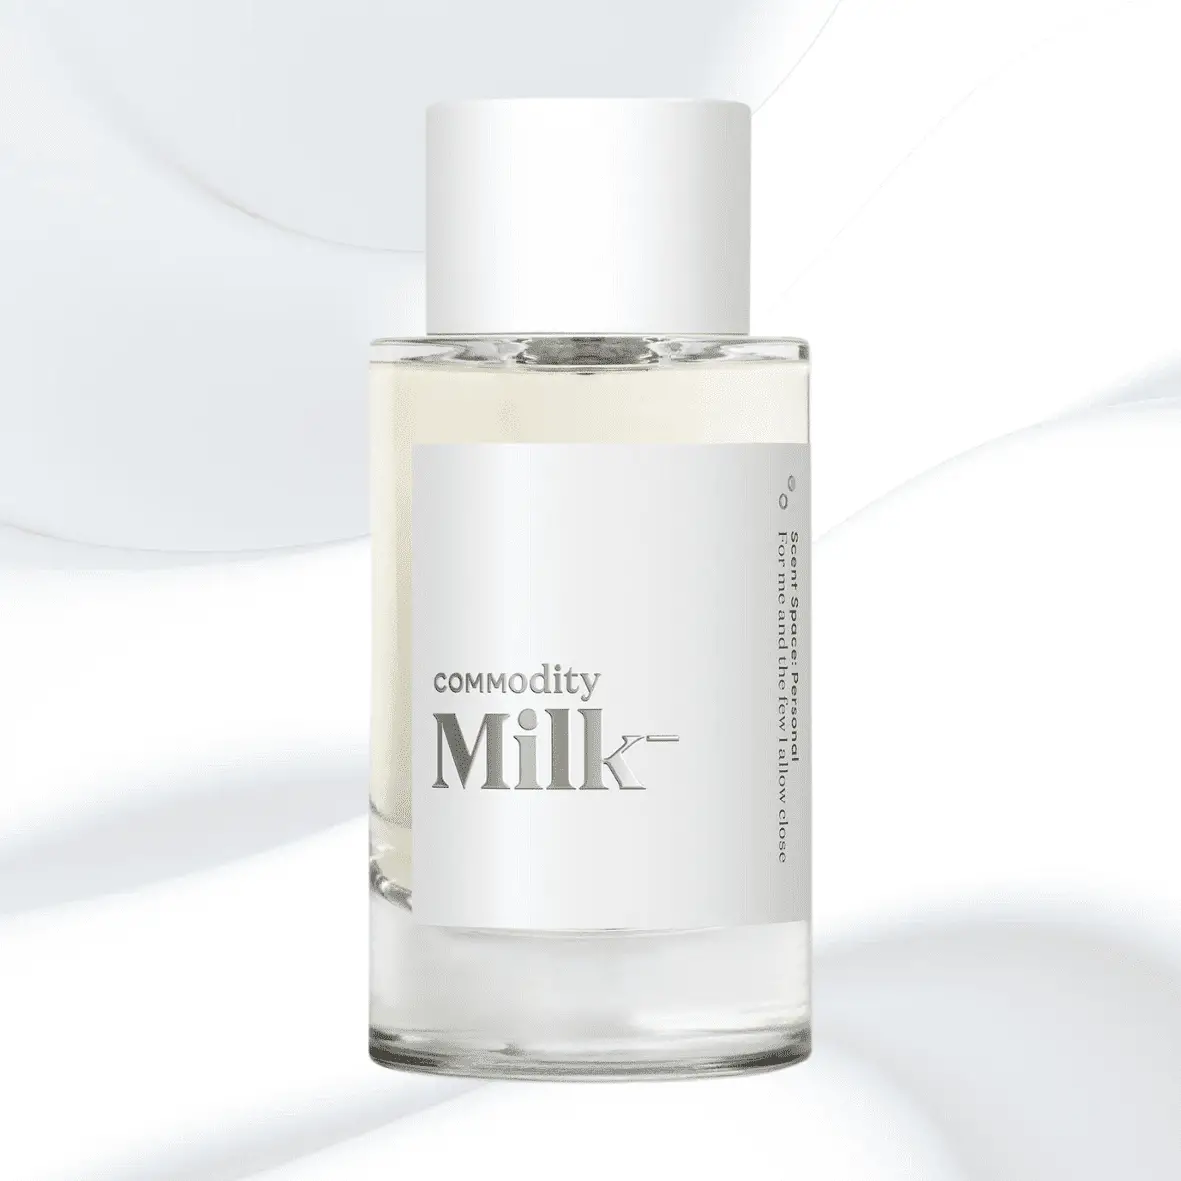 Commodity Milk -
Best Milky Perfumes